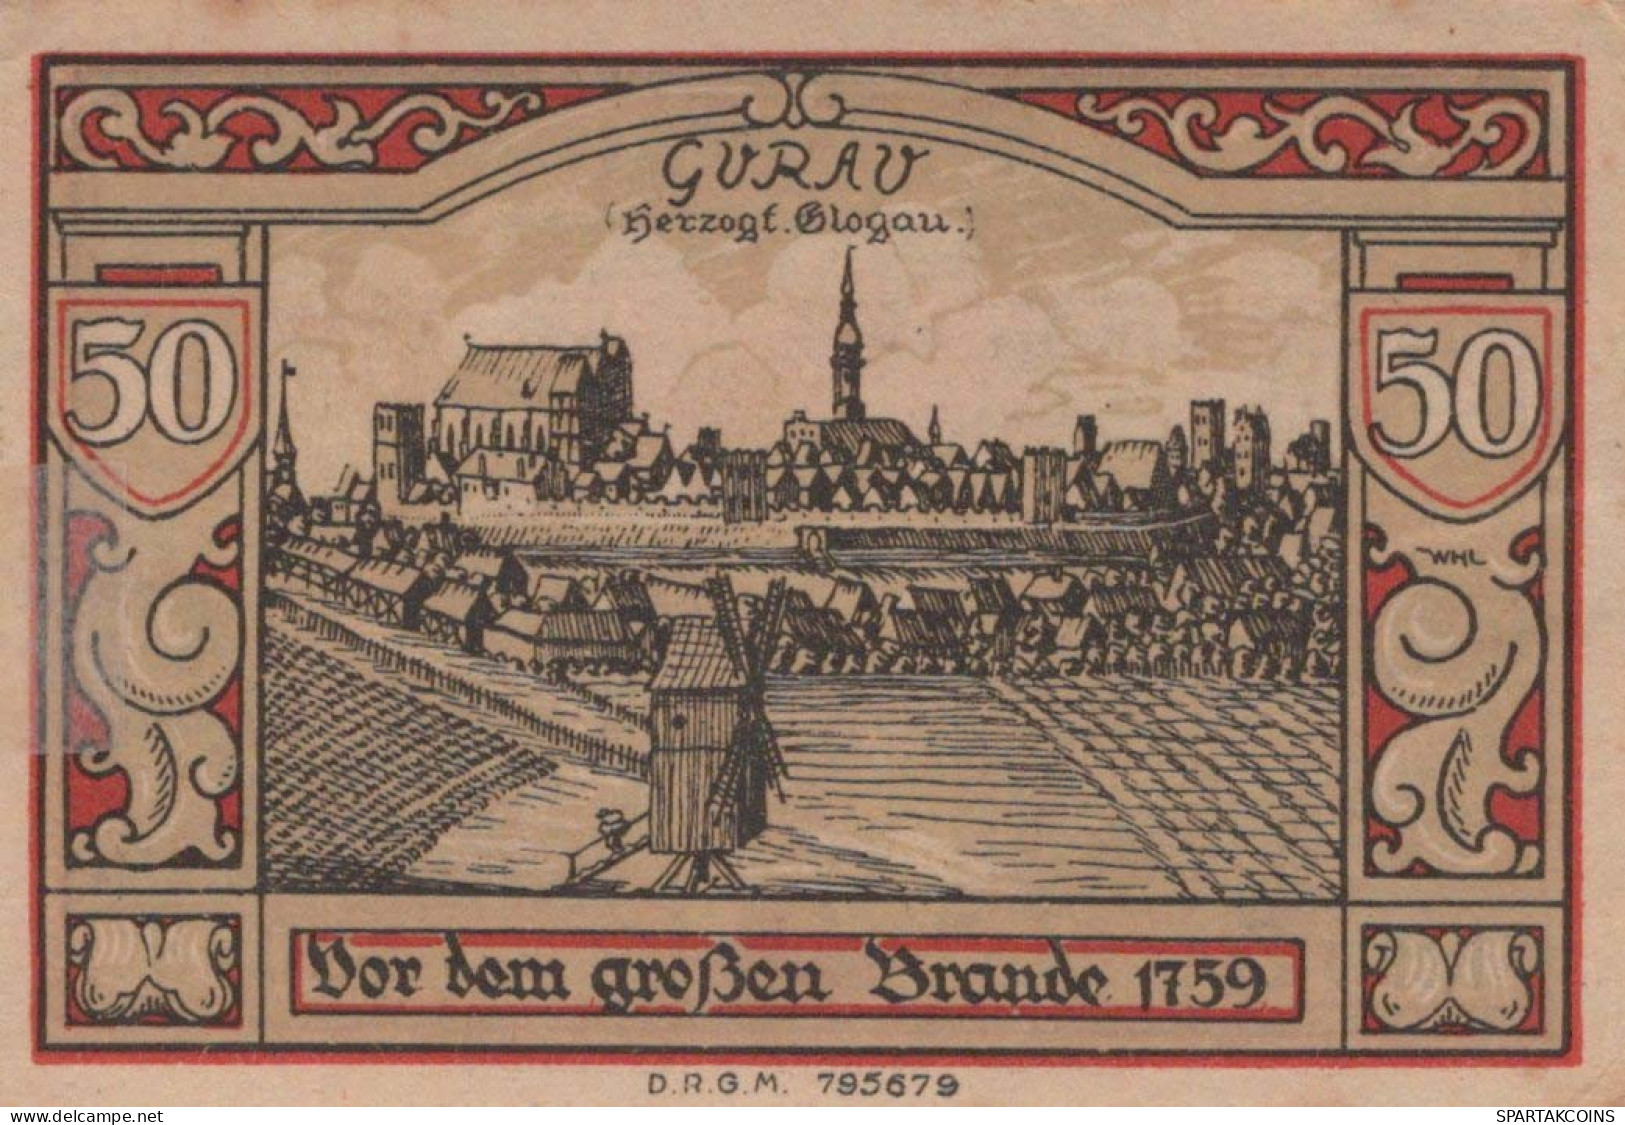 50 PFENNIG 1922 Stadt GUHRAU Niedrigeren Silesia UNC DEUTSCHLAND Notgeld #PD086 - Lokale Ausgaben